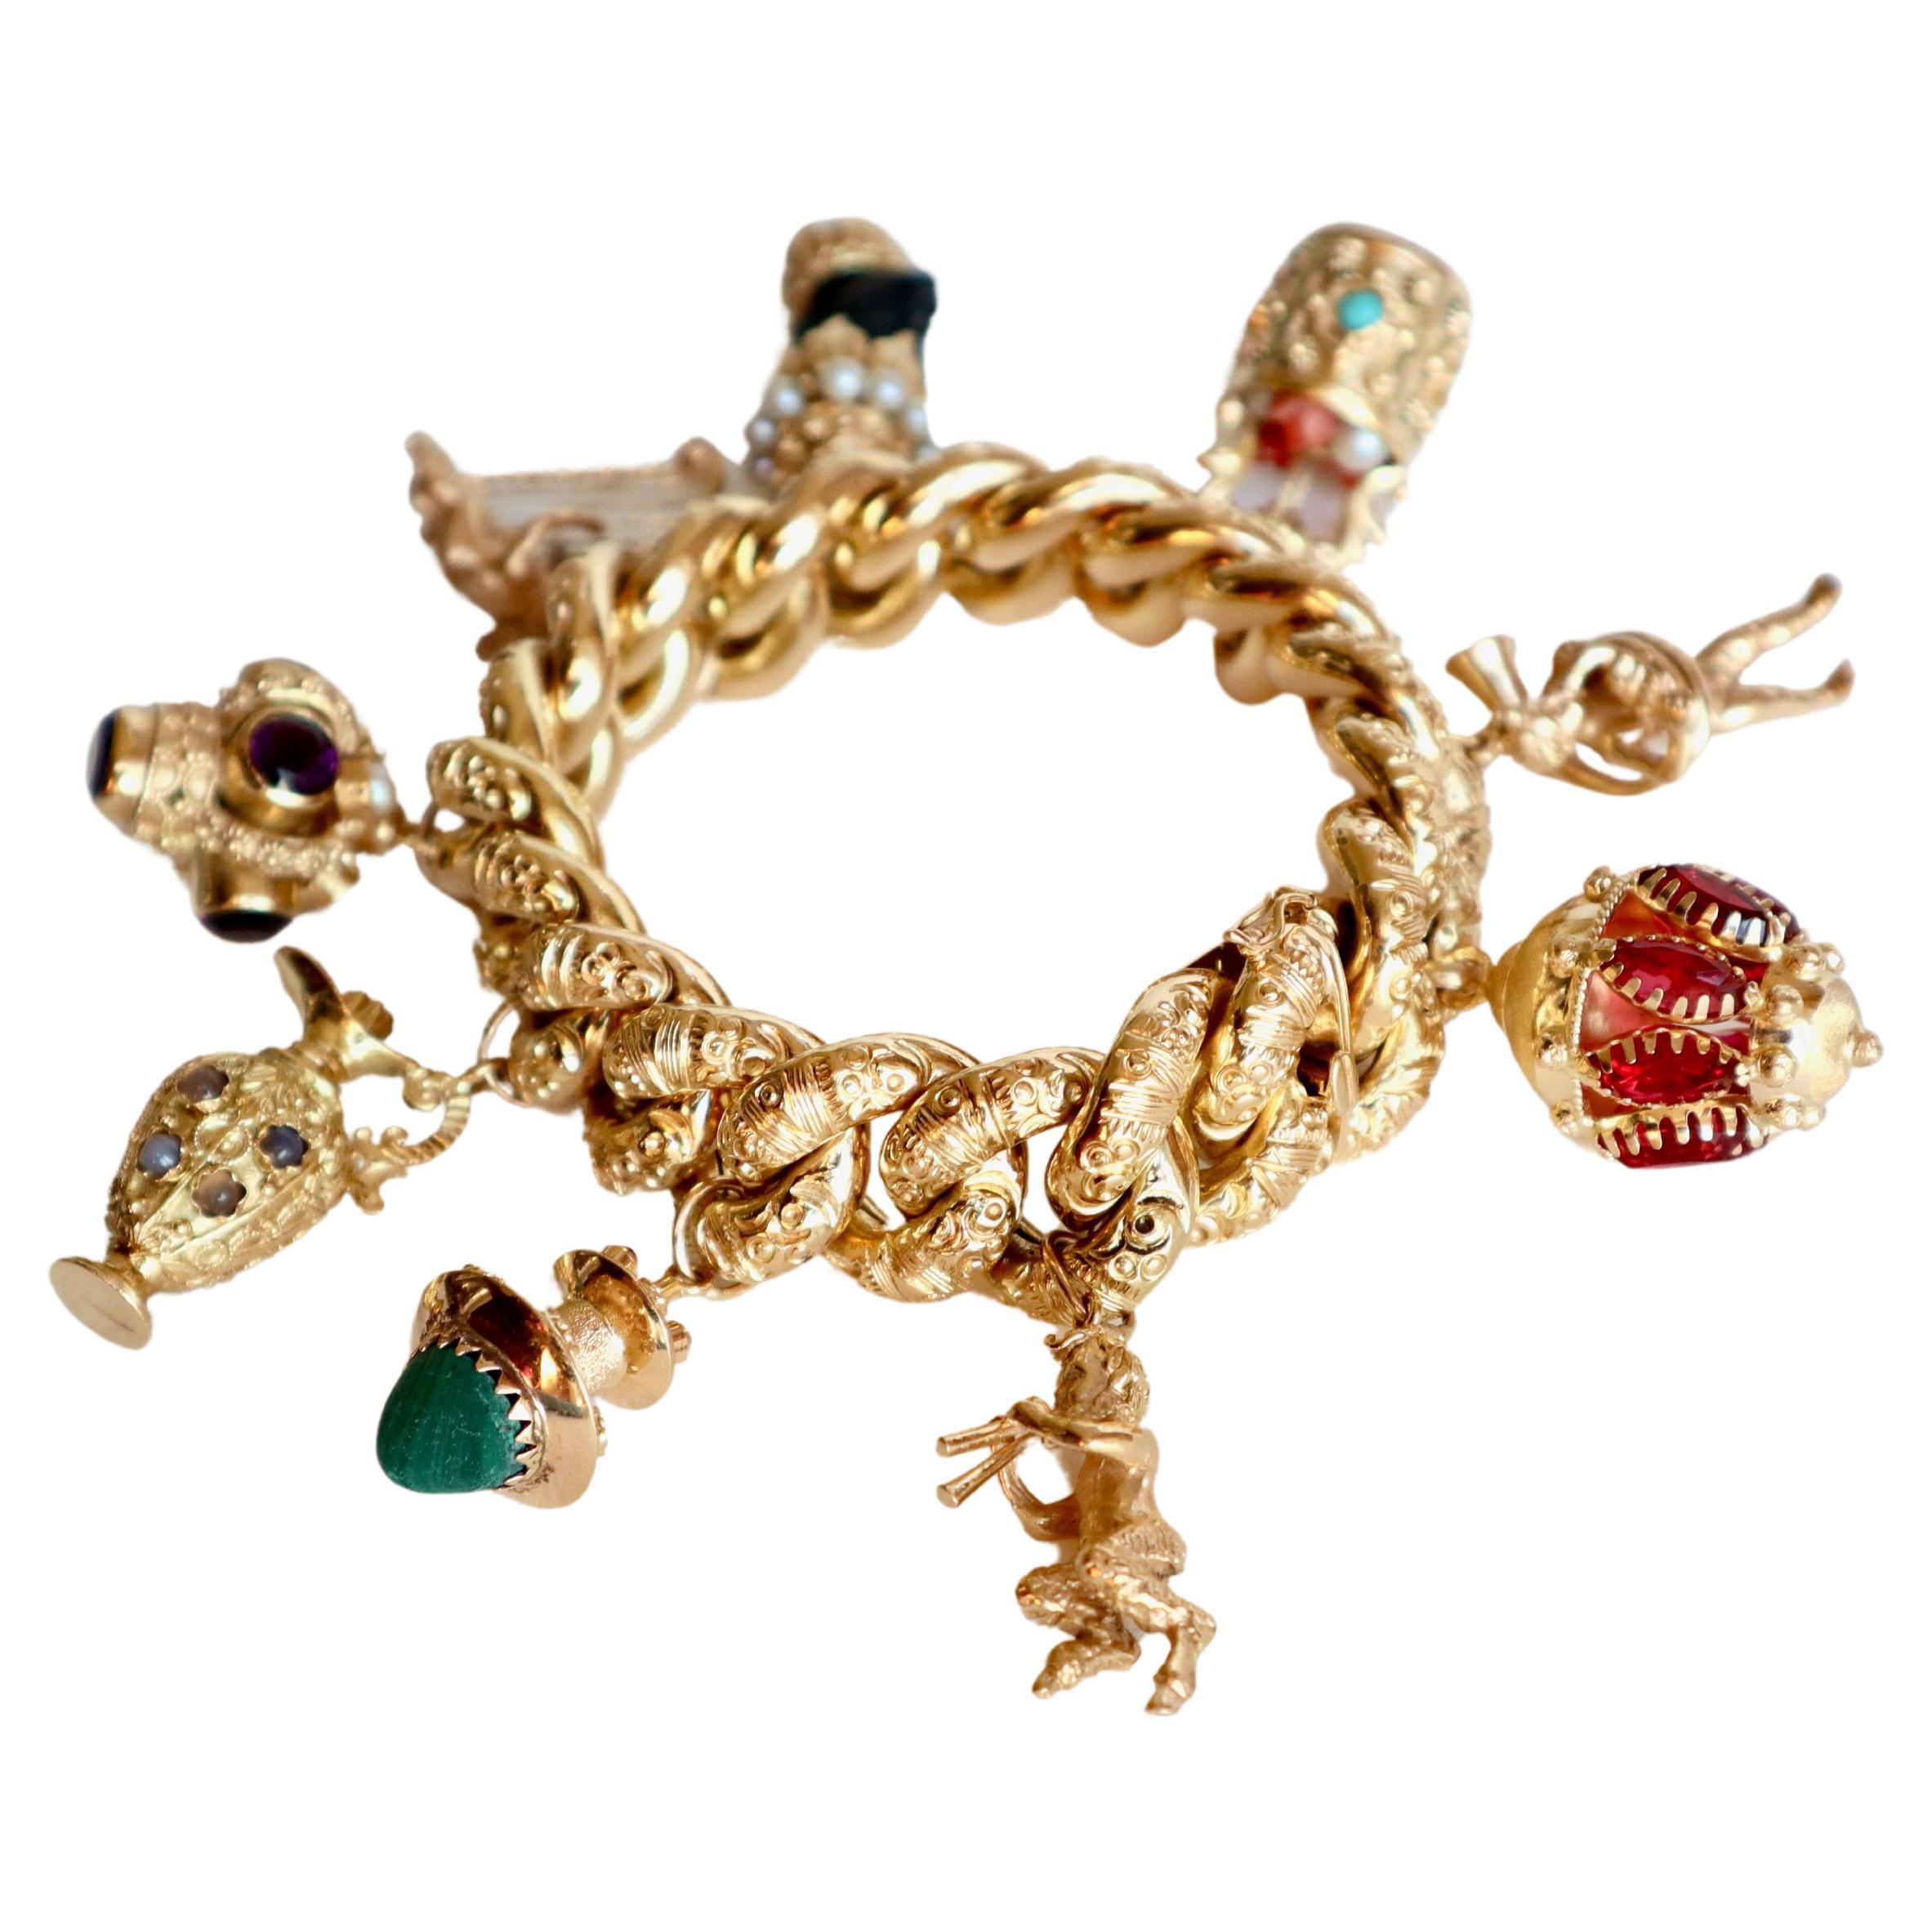 Bettelarmband aus Gelbgold mit 18 Karat Amethysten, Perlen und Korallen, feinen Steinen